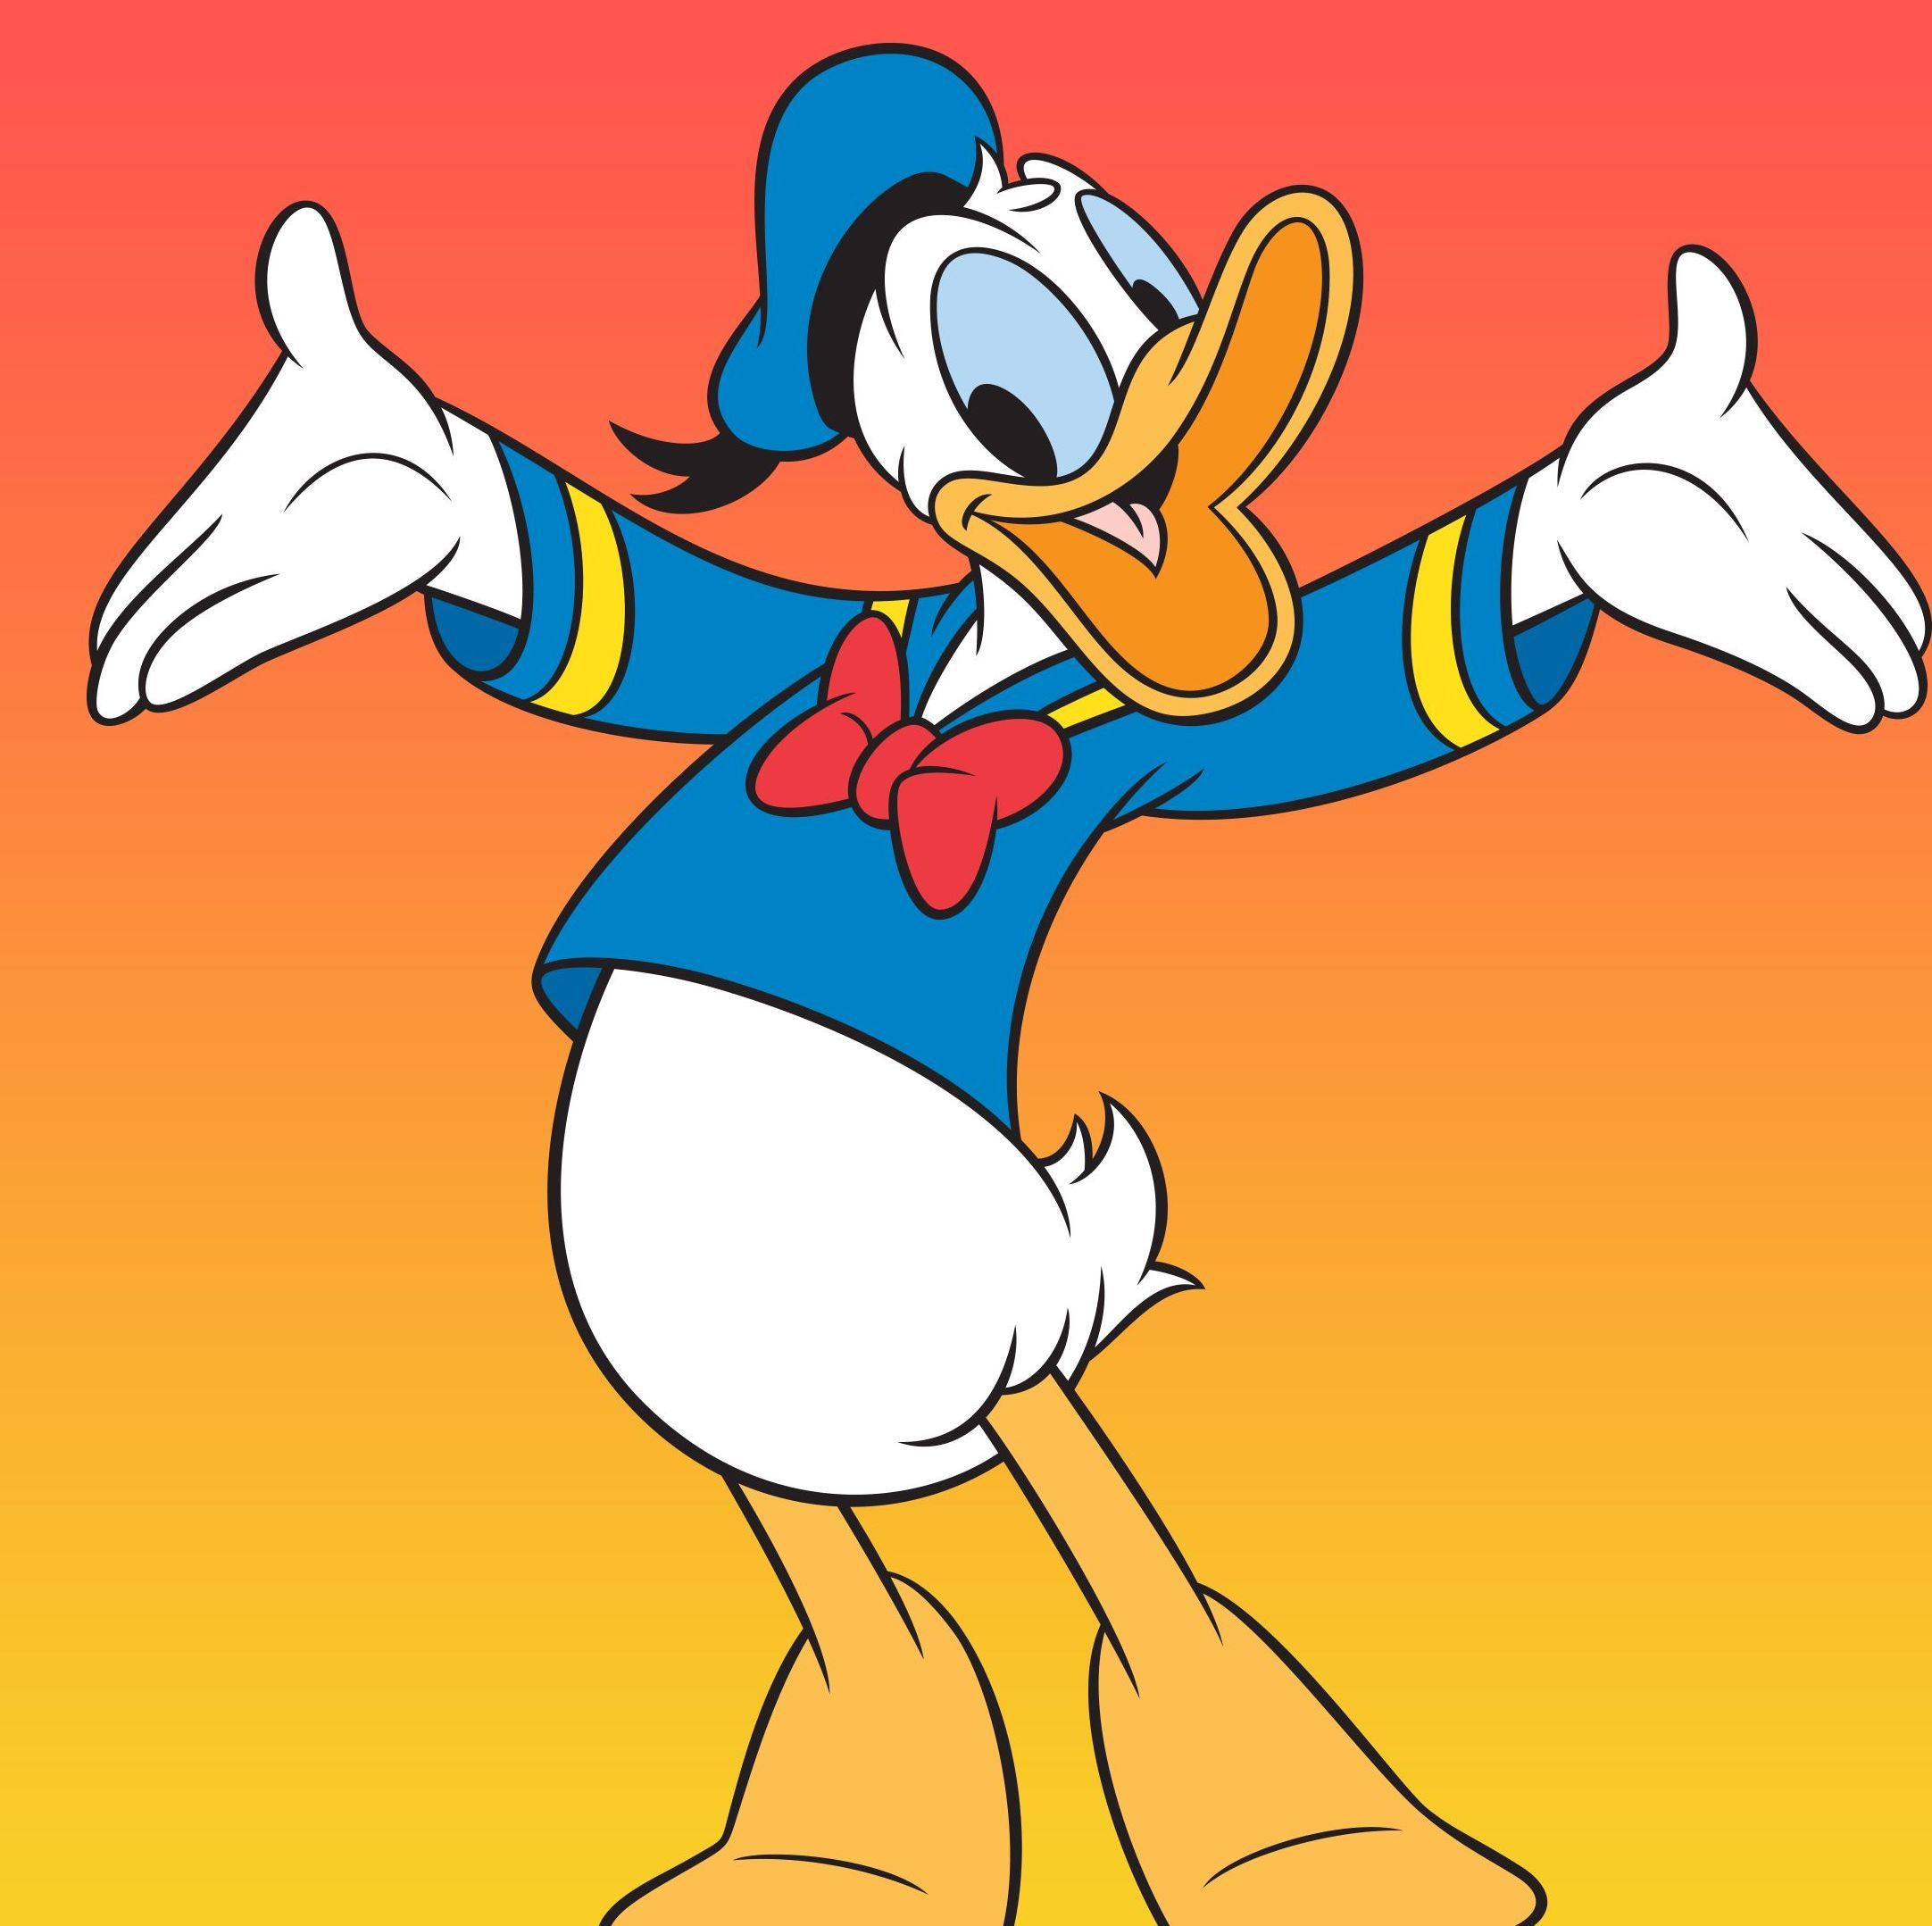 Llega un nuevo aniversario del Pato Donald y Disney+ lo celebra con una  colección para celebrar y recordar tu infancia.